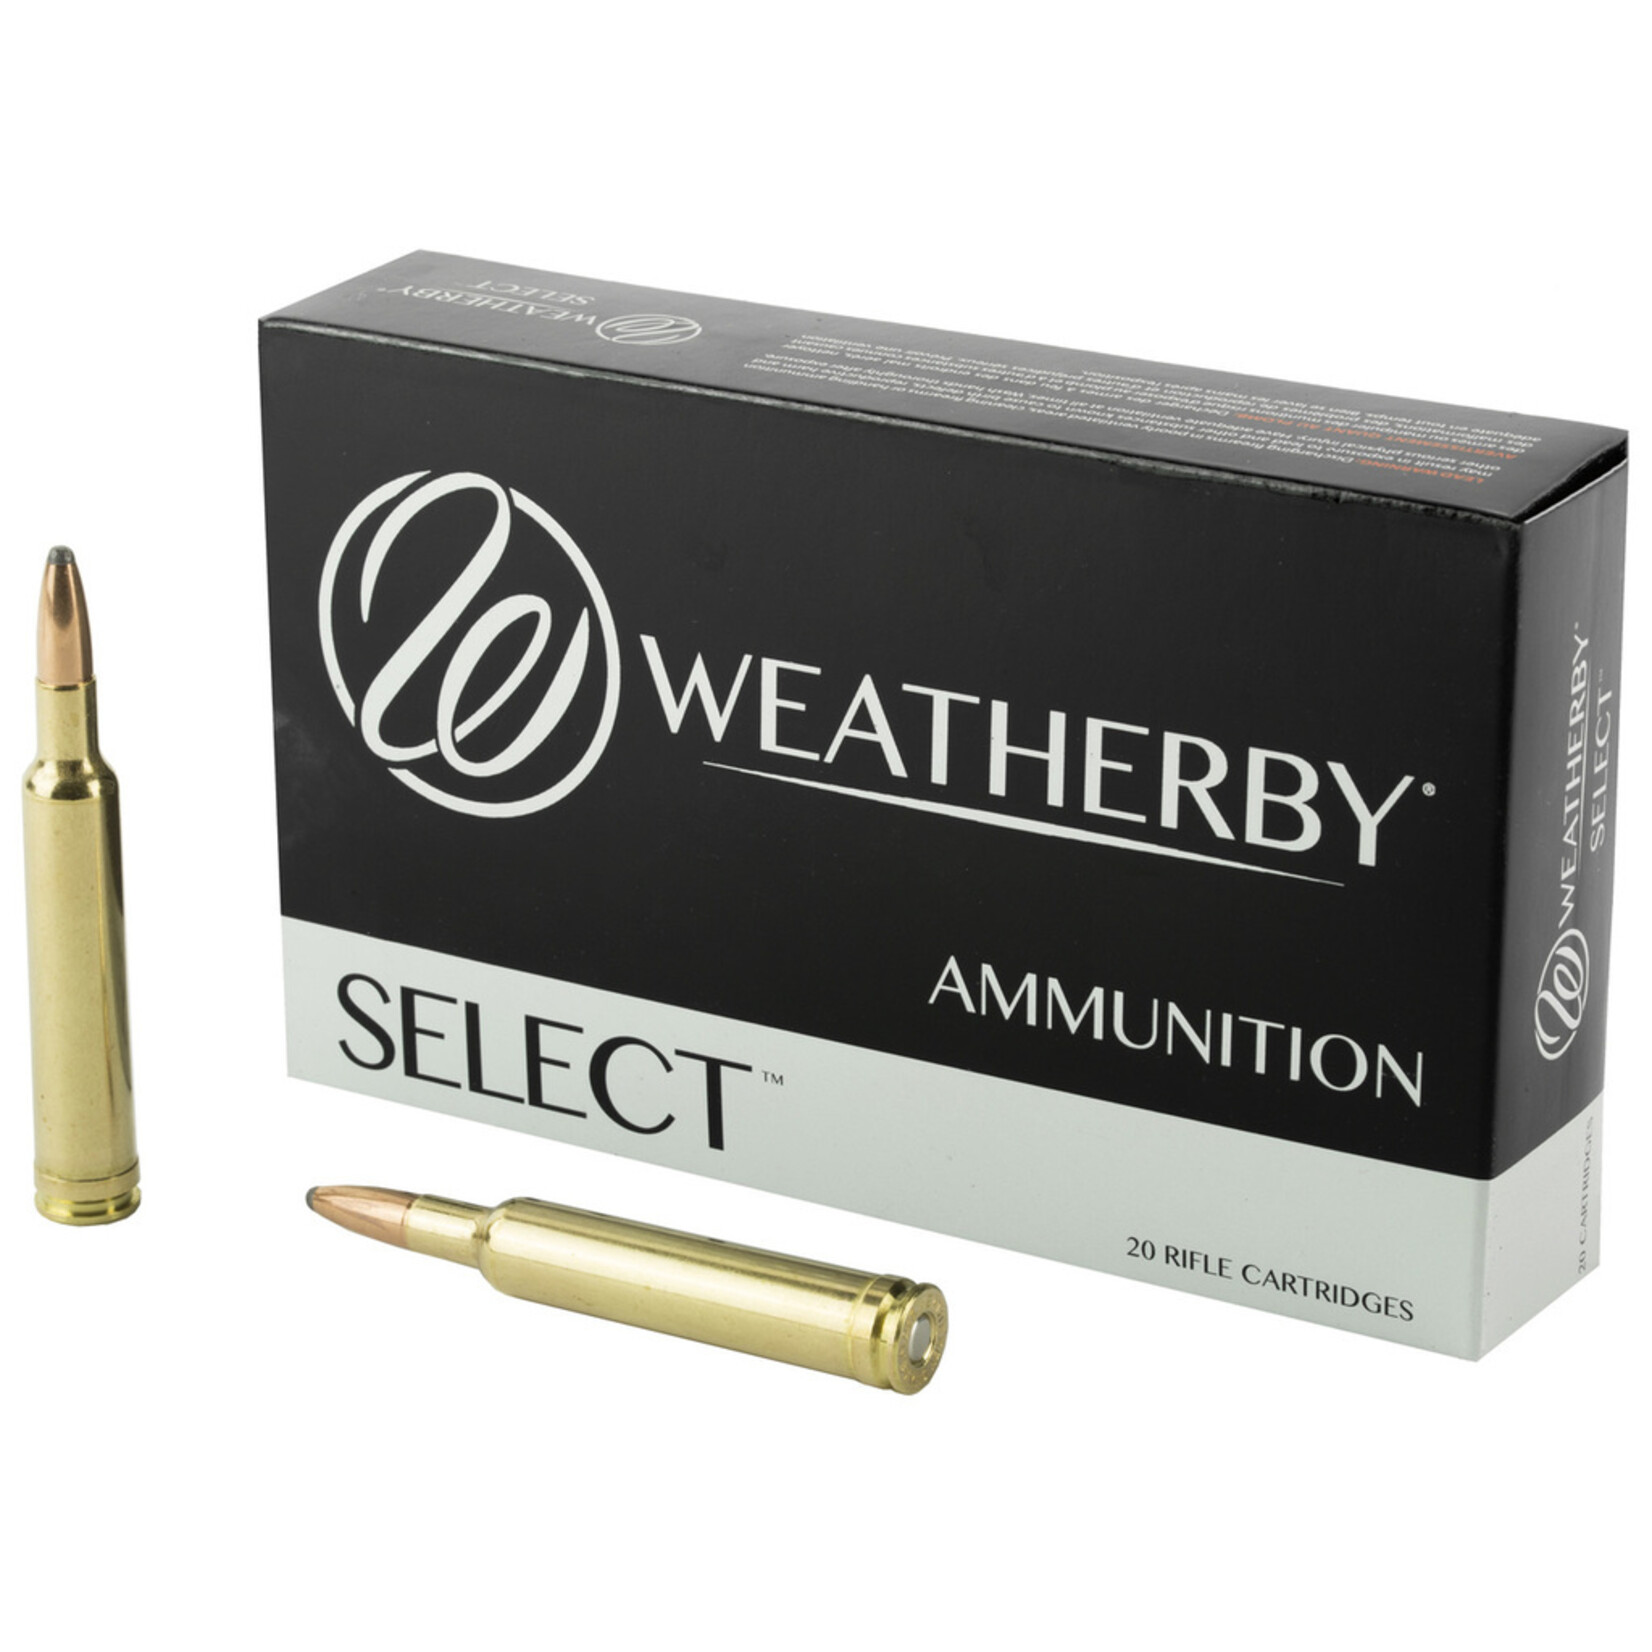 Weatherby Weatherby Select Rifle Ammuniton